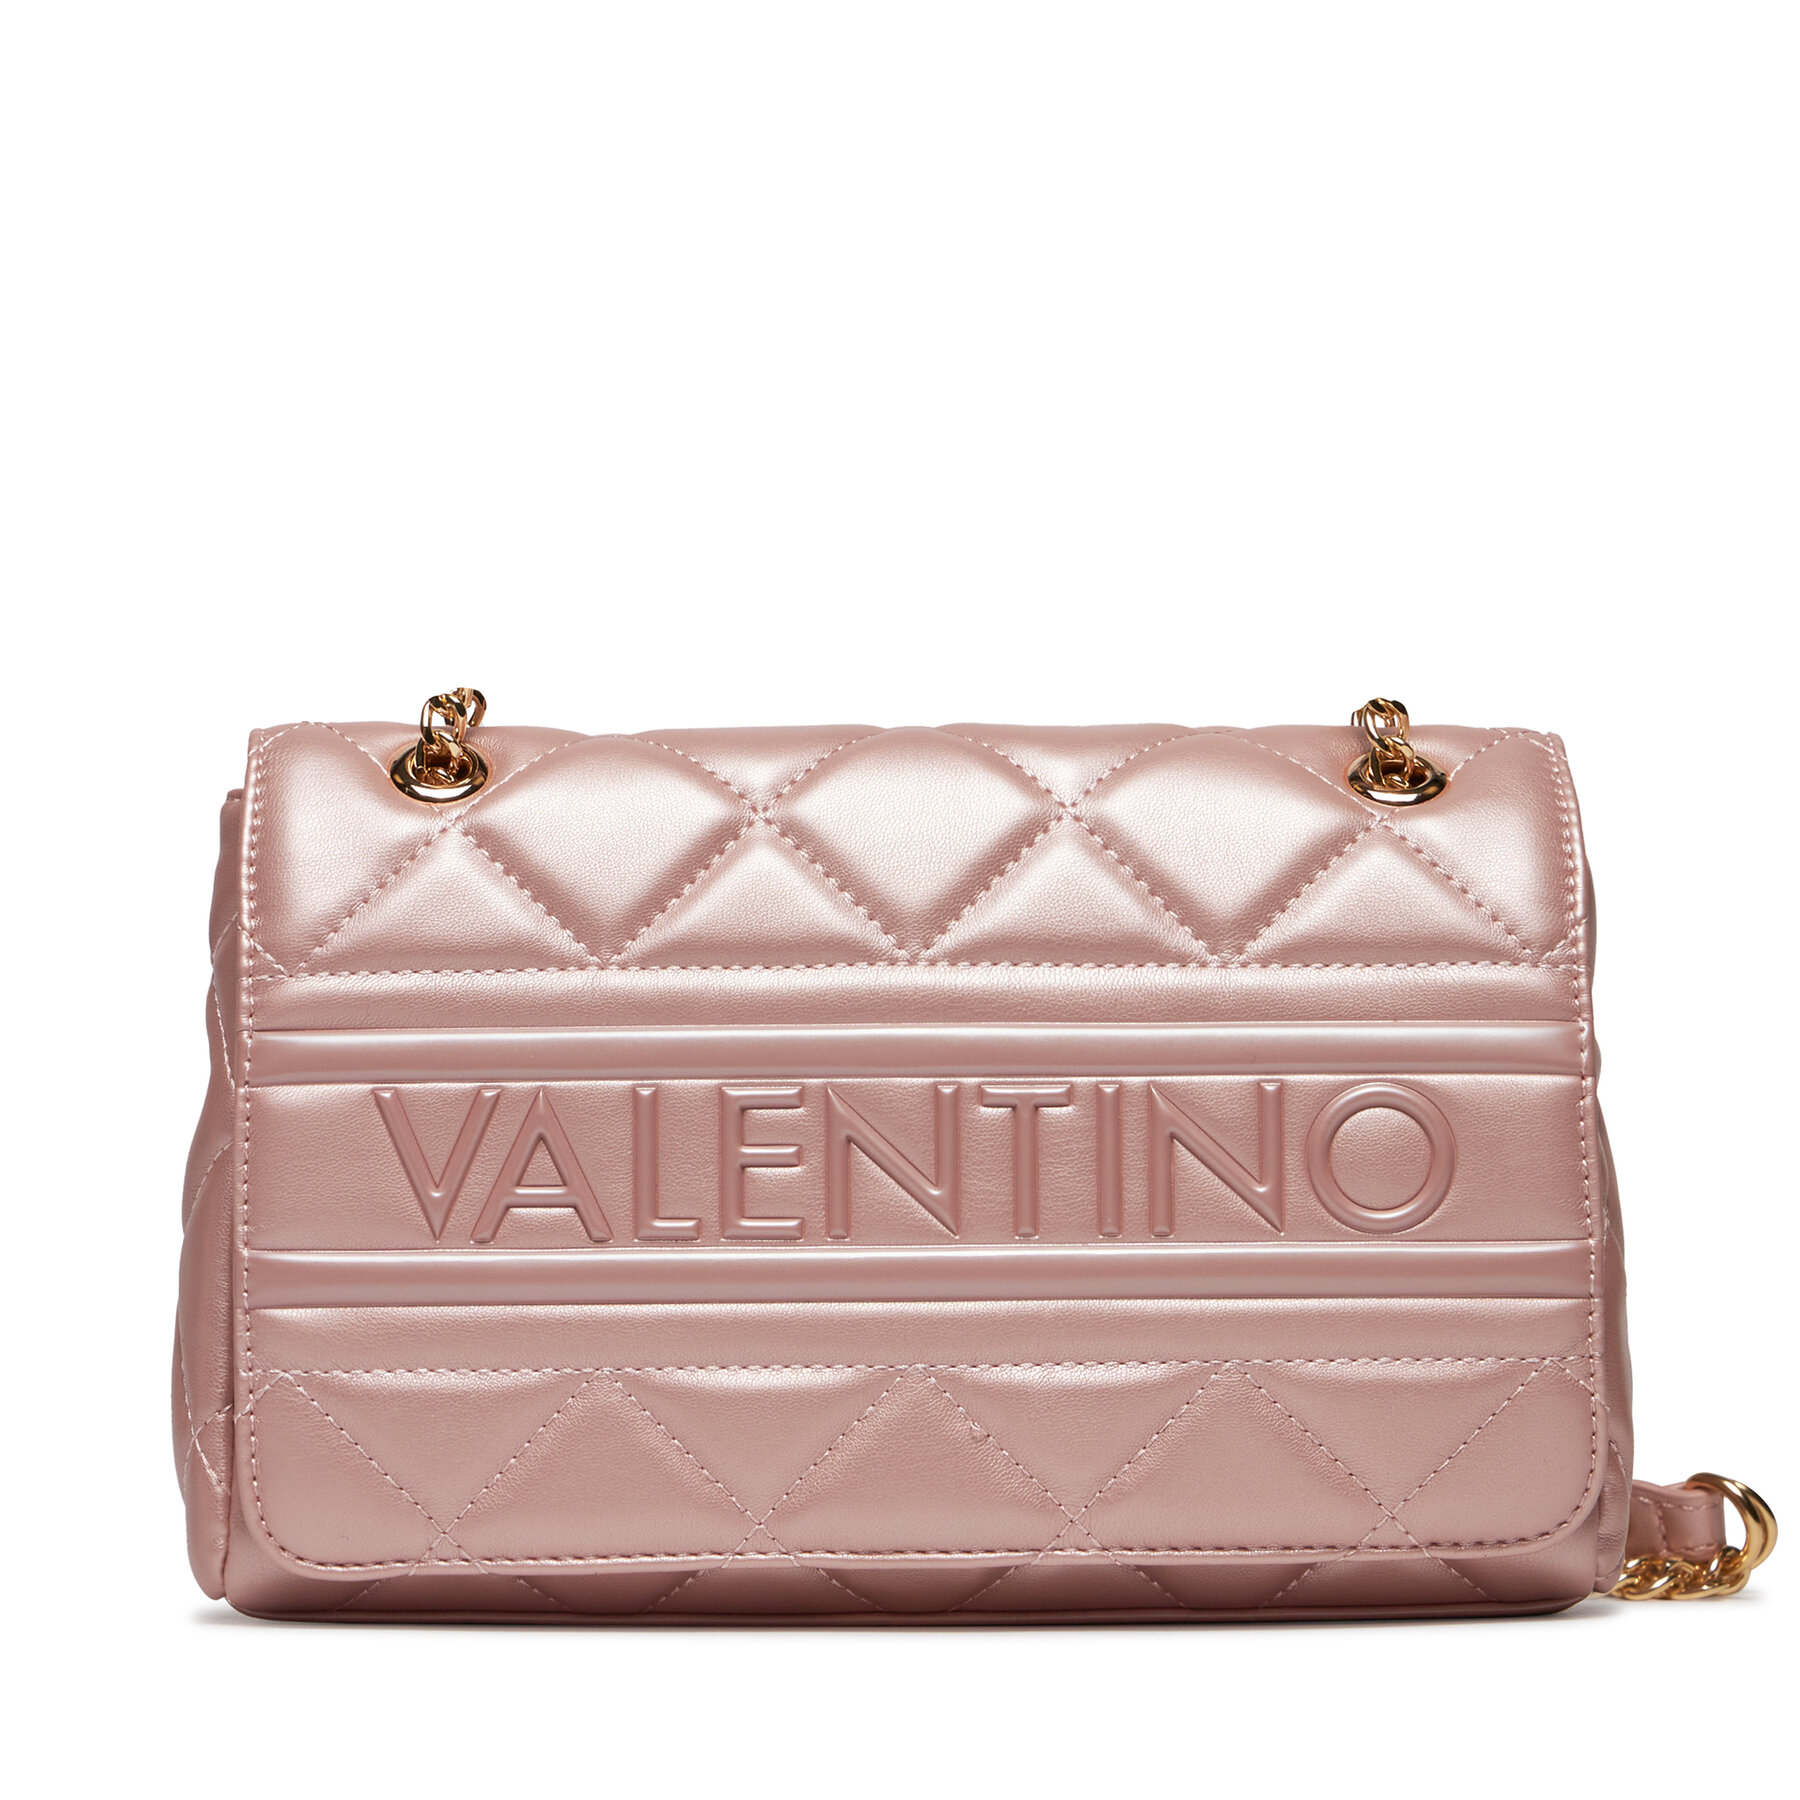 Valentino Bags Ada (VBS51O05_V89) rosa metallizzato